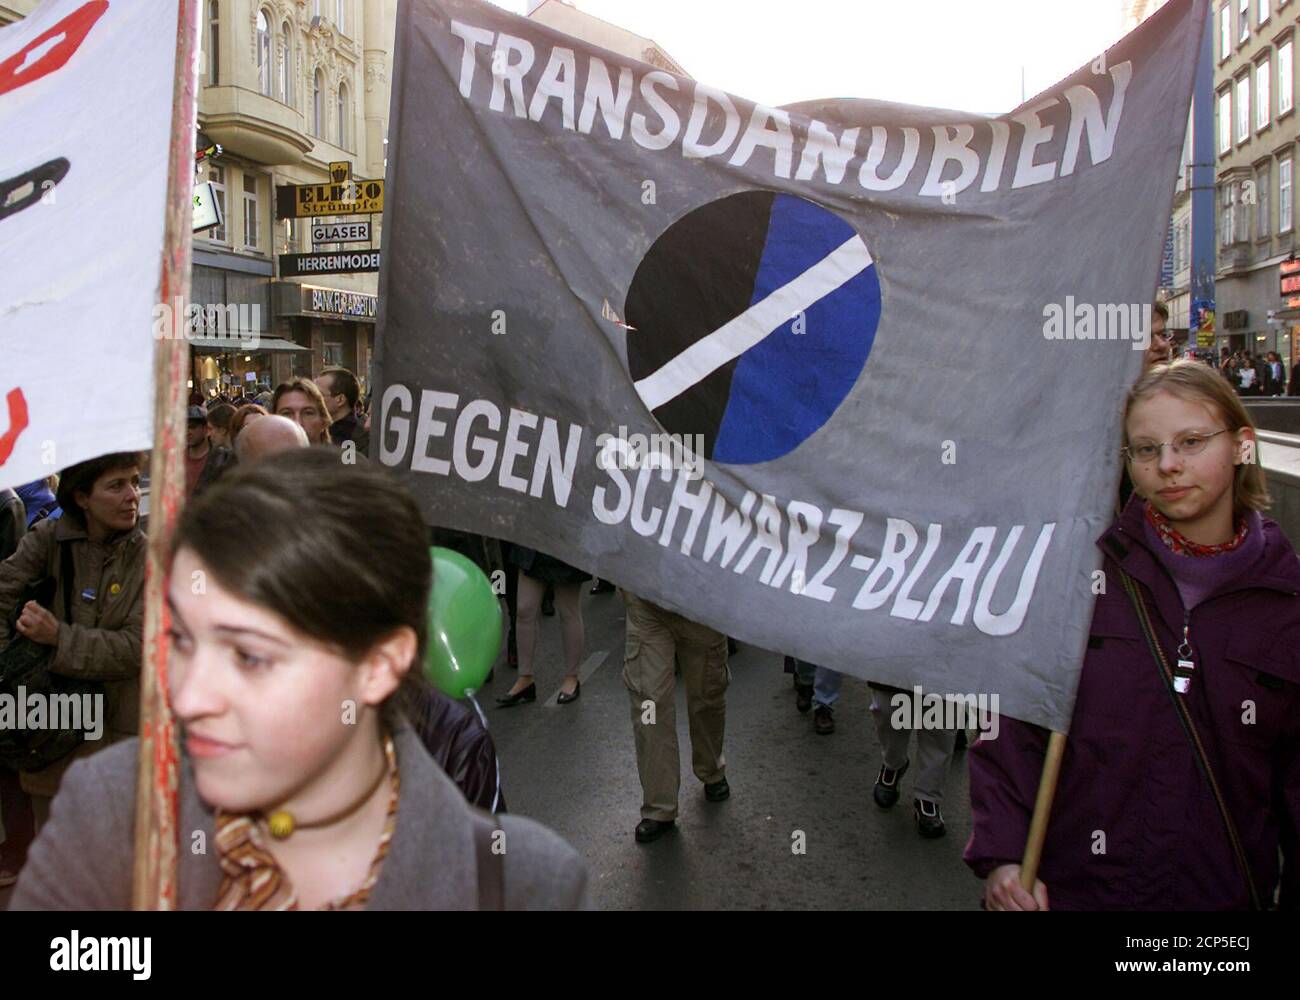 Am 2. Febrero 2002, dem zweiten Jahrestag der Angelobung der Bundesregierung, beteiligten sich in Wien ca. 2000 Personen an einer Demo gegen die FPOe-OeVP-Regierung. Mit Pfiffen und Trommeln wurde die Koituskritisiert, die Kundgebung verlief friedlich. REUTERS/Herwig Prammer REUTERS PR/ Foto de stock